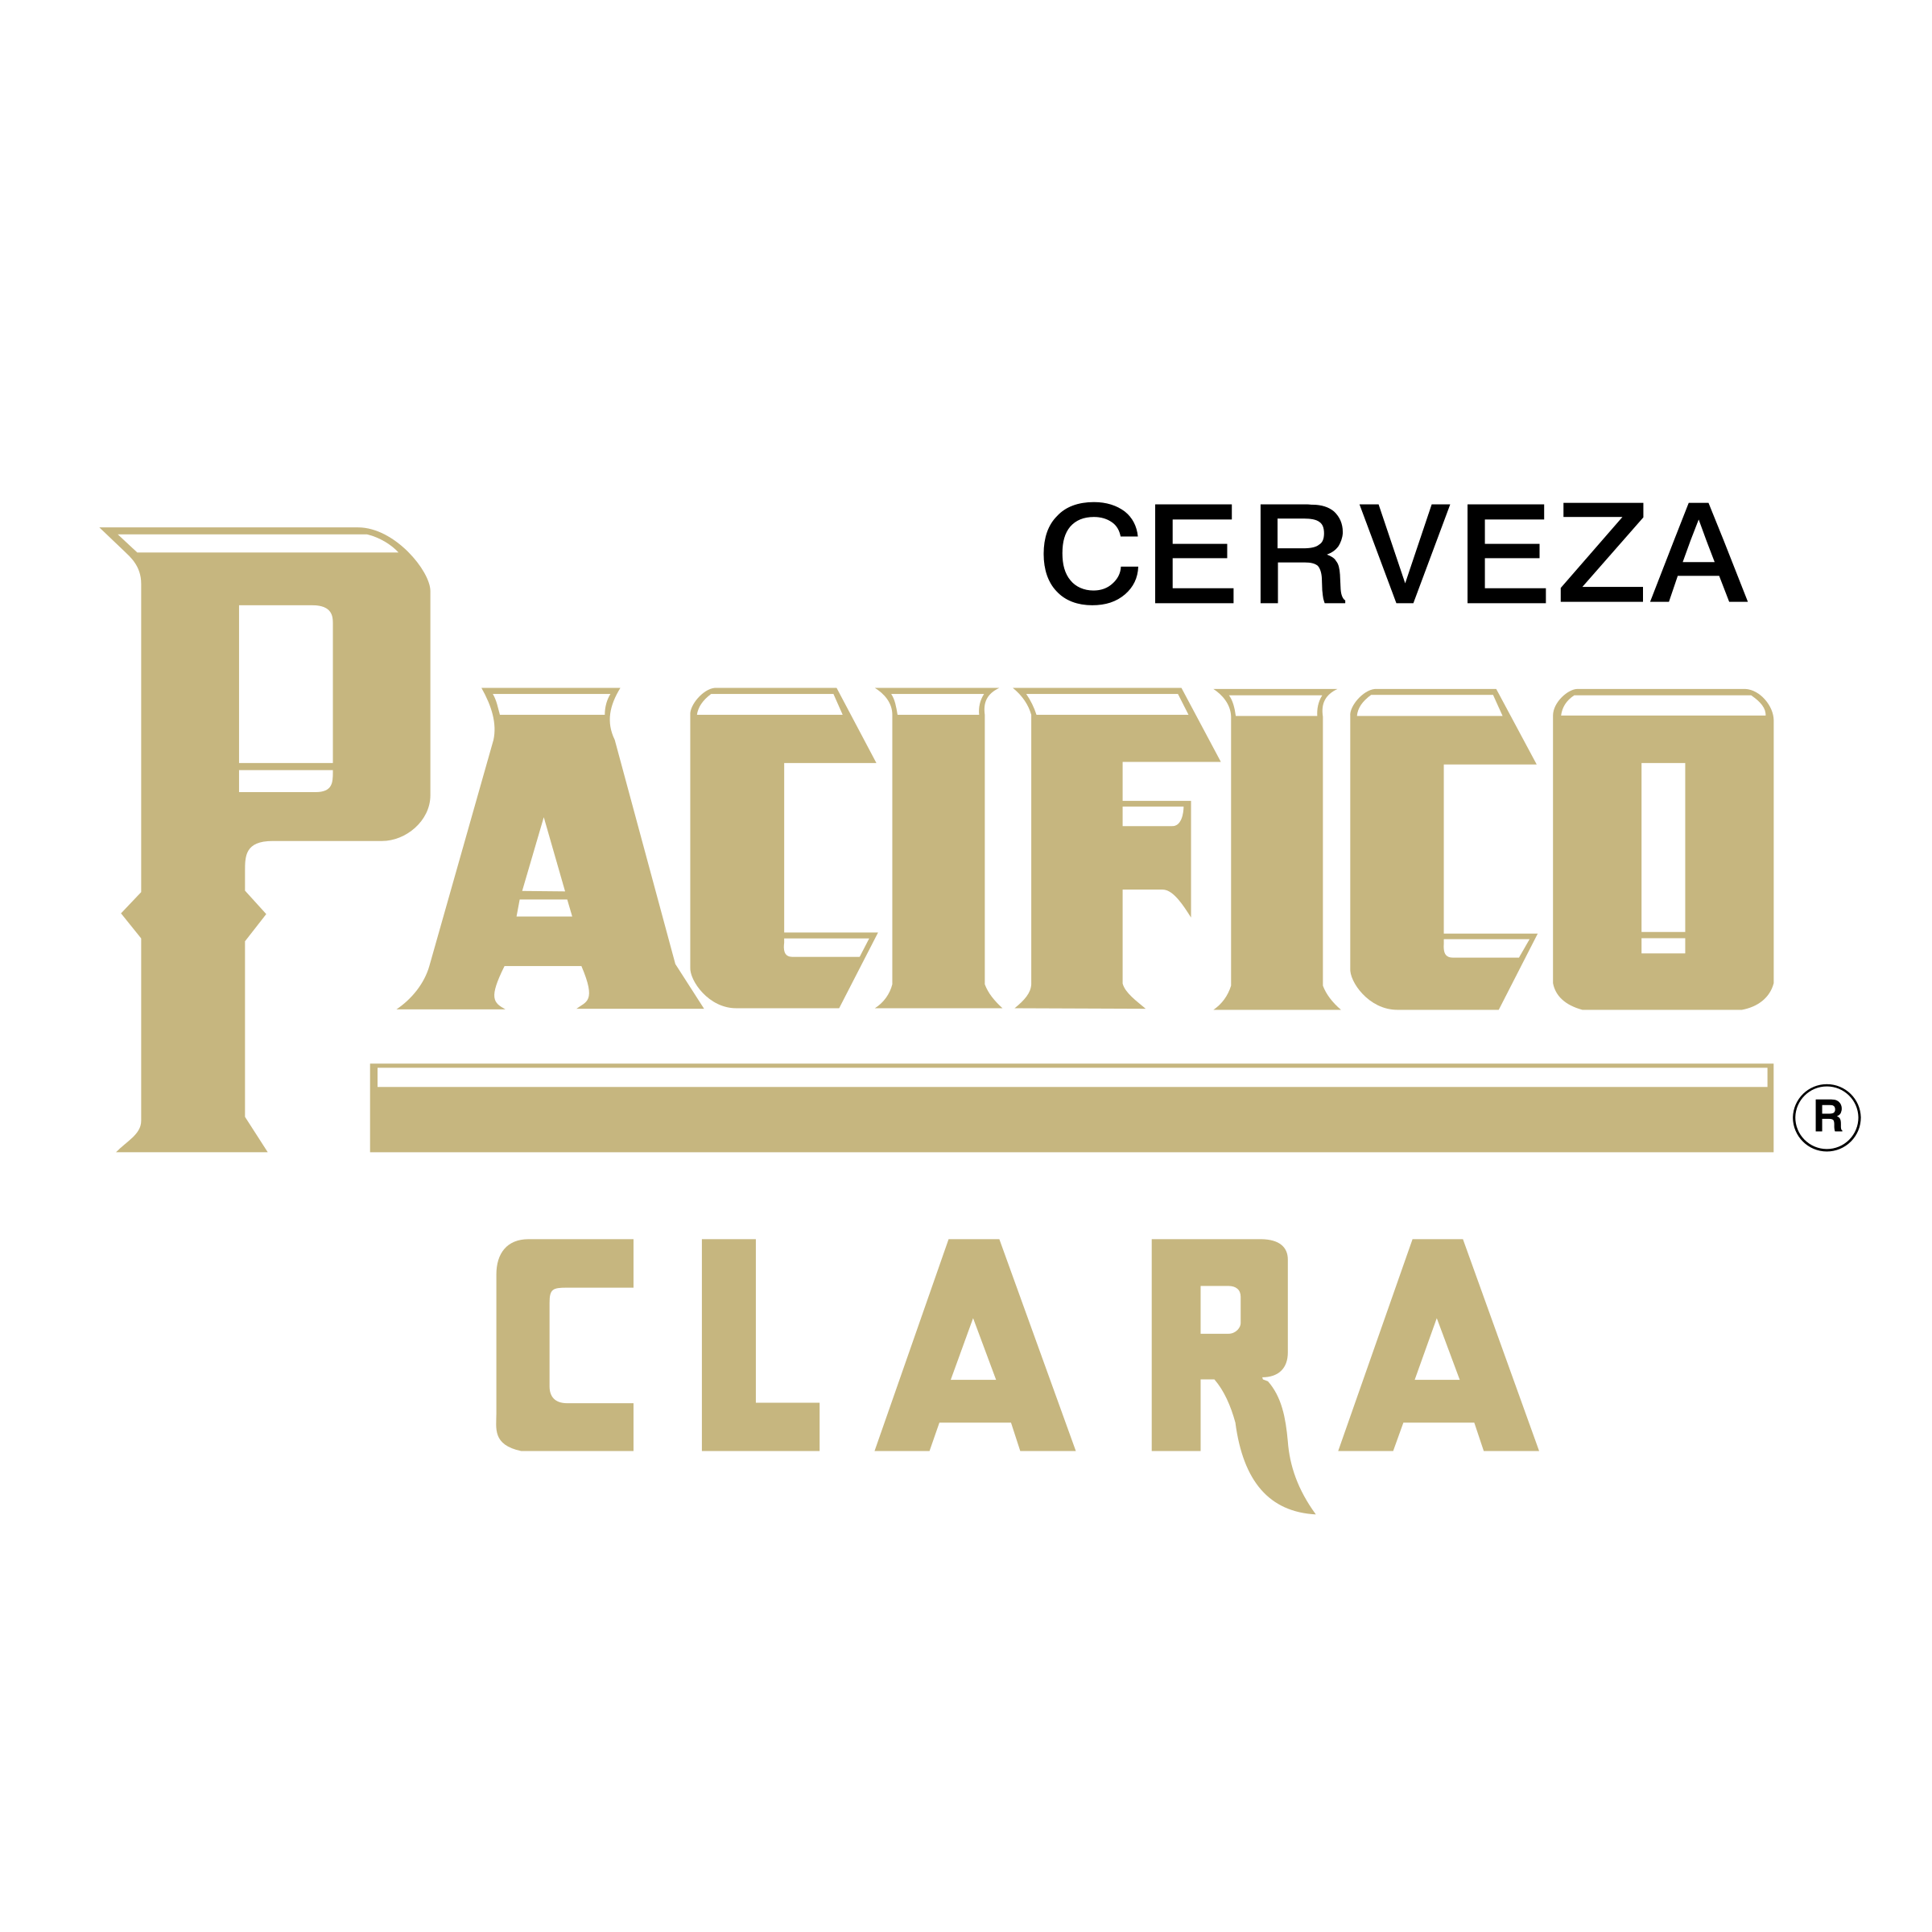 Pacifico Logo - Pacifico Clara Logo PNG Transparent & SVG Vector - Freebie Supply